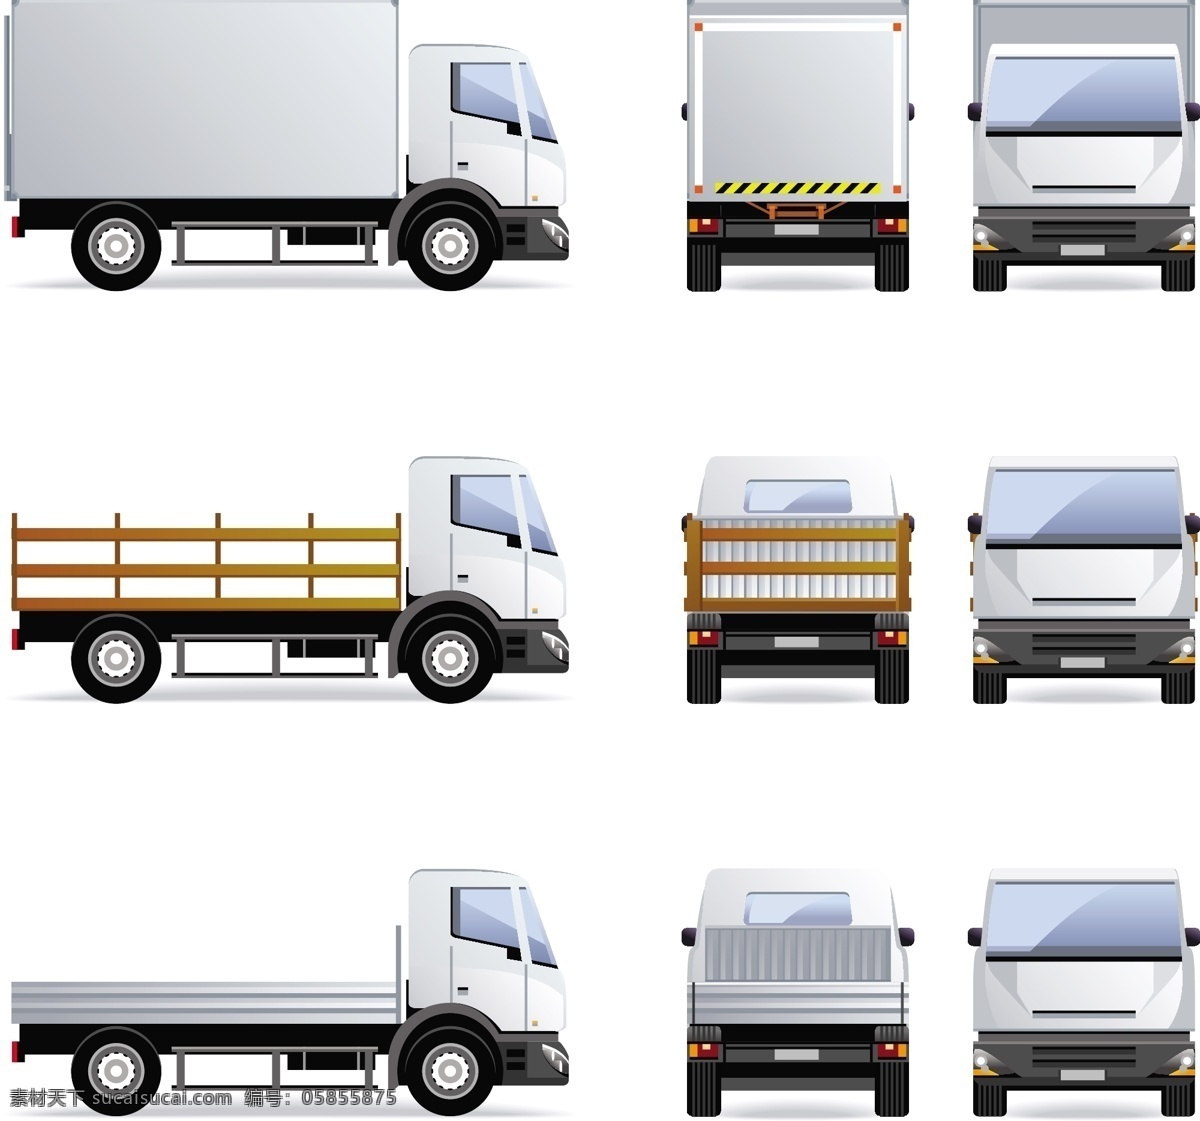 货车设计素材 货车 货车设计 货车素材 矢量货车 车 汽车 运输车 卡车 矢量素材 交通工具 现代科技 白色